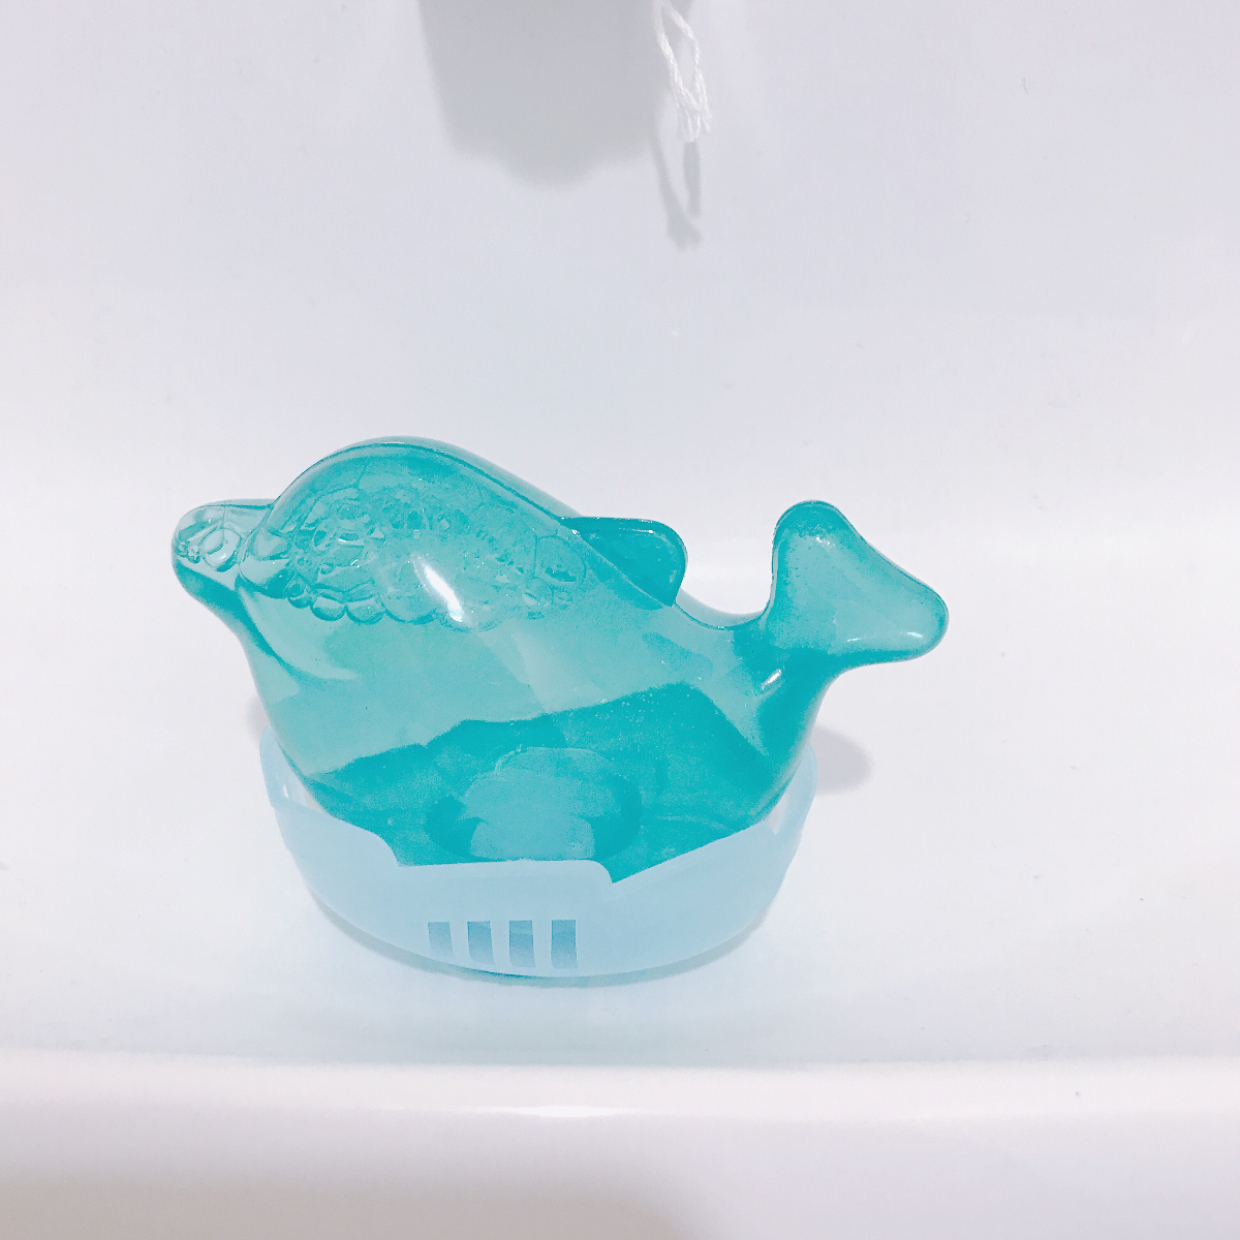  【セリア】イルカとクジラ型のトイレ洗浄剤が100均とは思えないクオリティ！ 